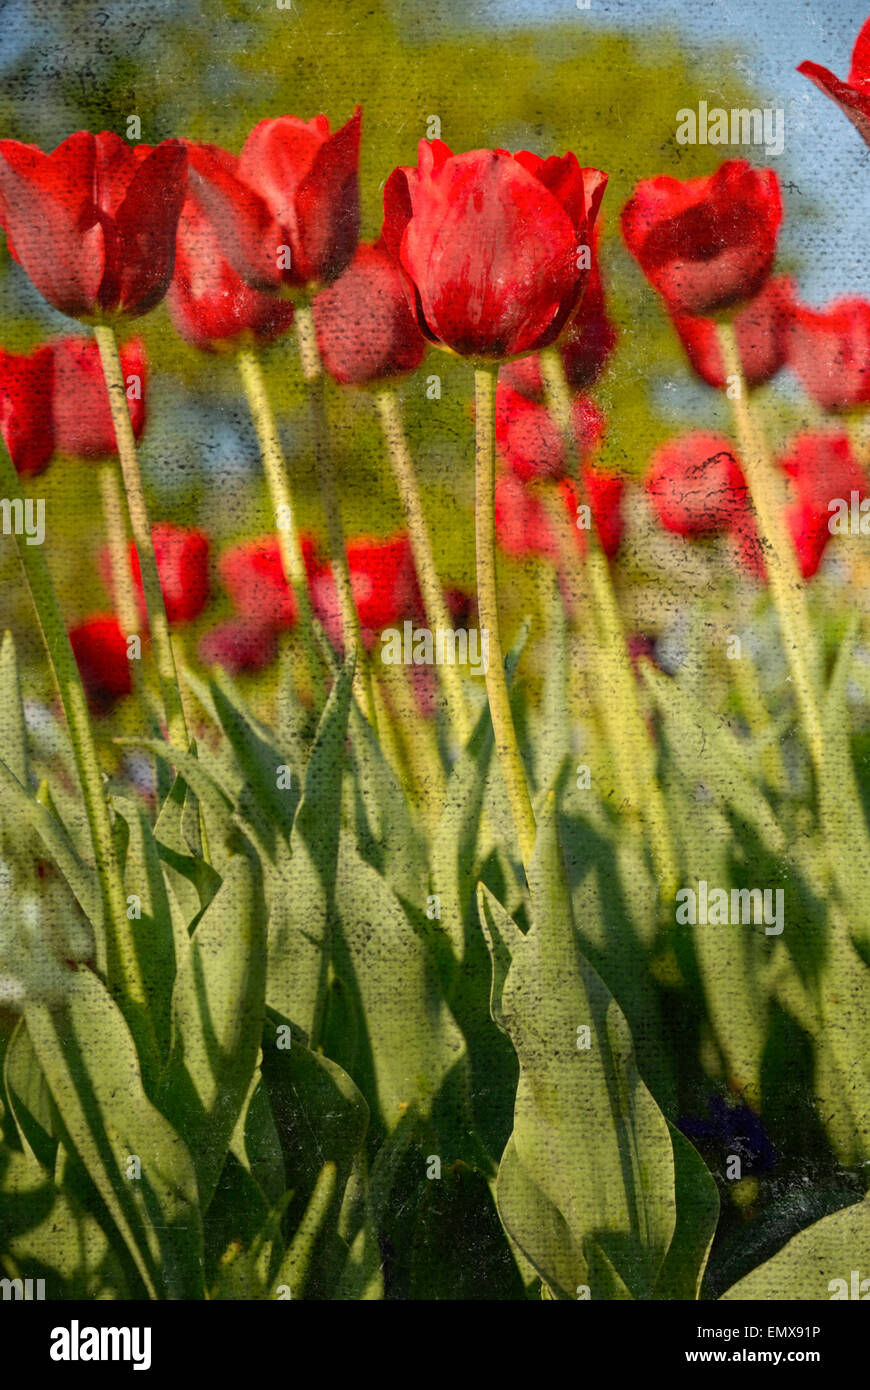 Tulipani rossi con addolorato, grungy texture overlay, che aggiunge invecchiato o effetto spiovente alla foto. Foto Stock